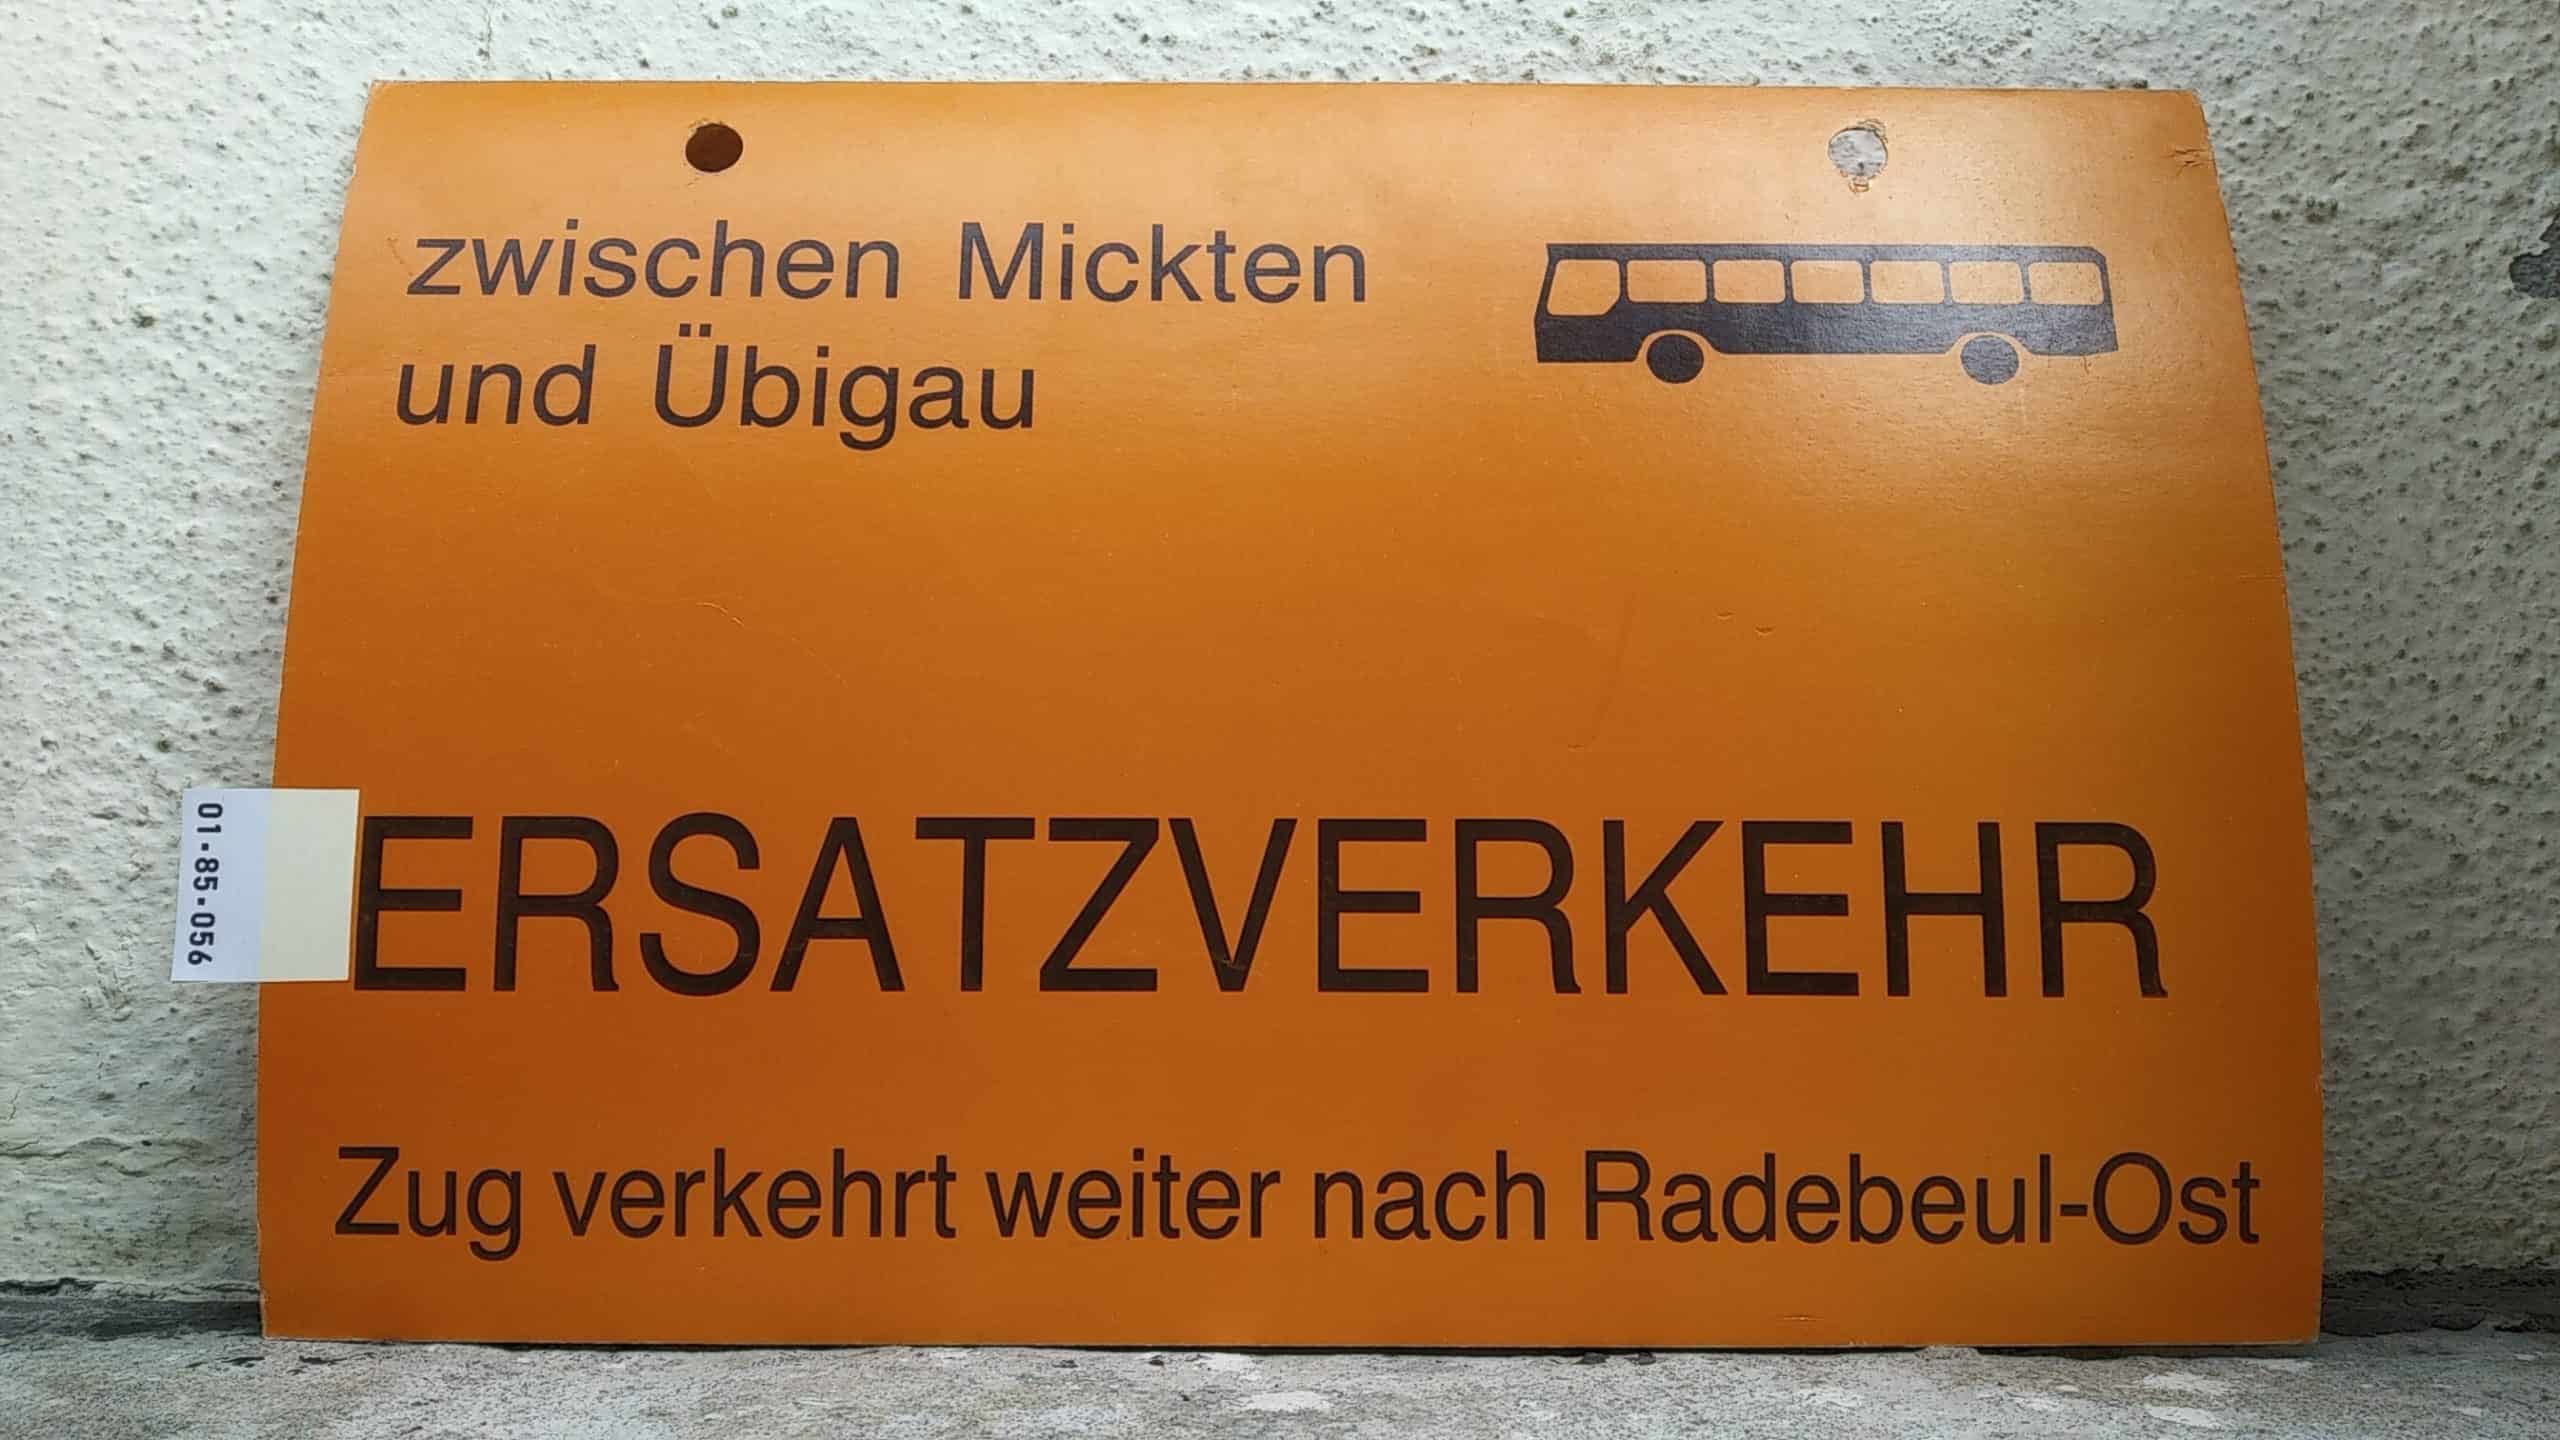 Ein seltenes Straßenbahn-Umleitungsschild aus Dresden: zwischen Mickten und Übigau [Bus neu] ERSATZVERKEHR Zug verkehrt weiter nach Radebeul-Ost